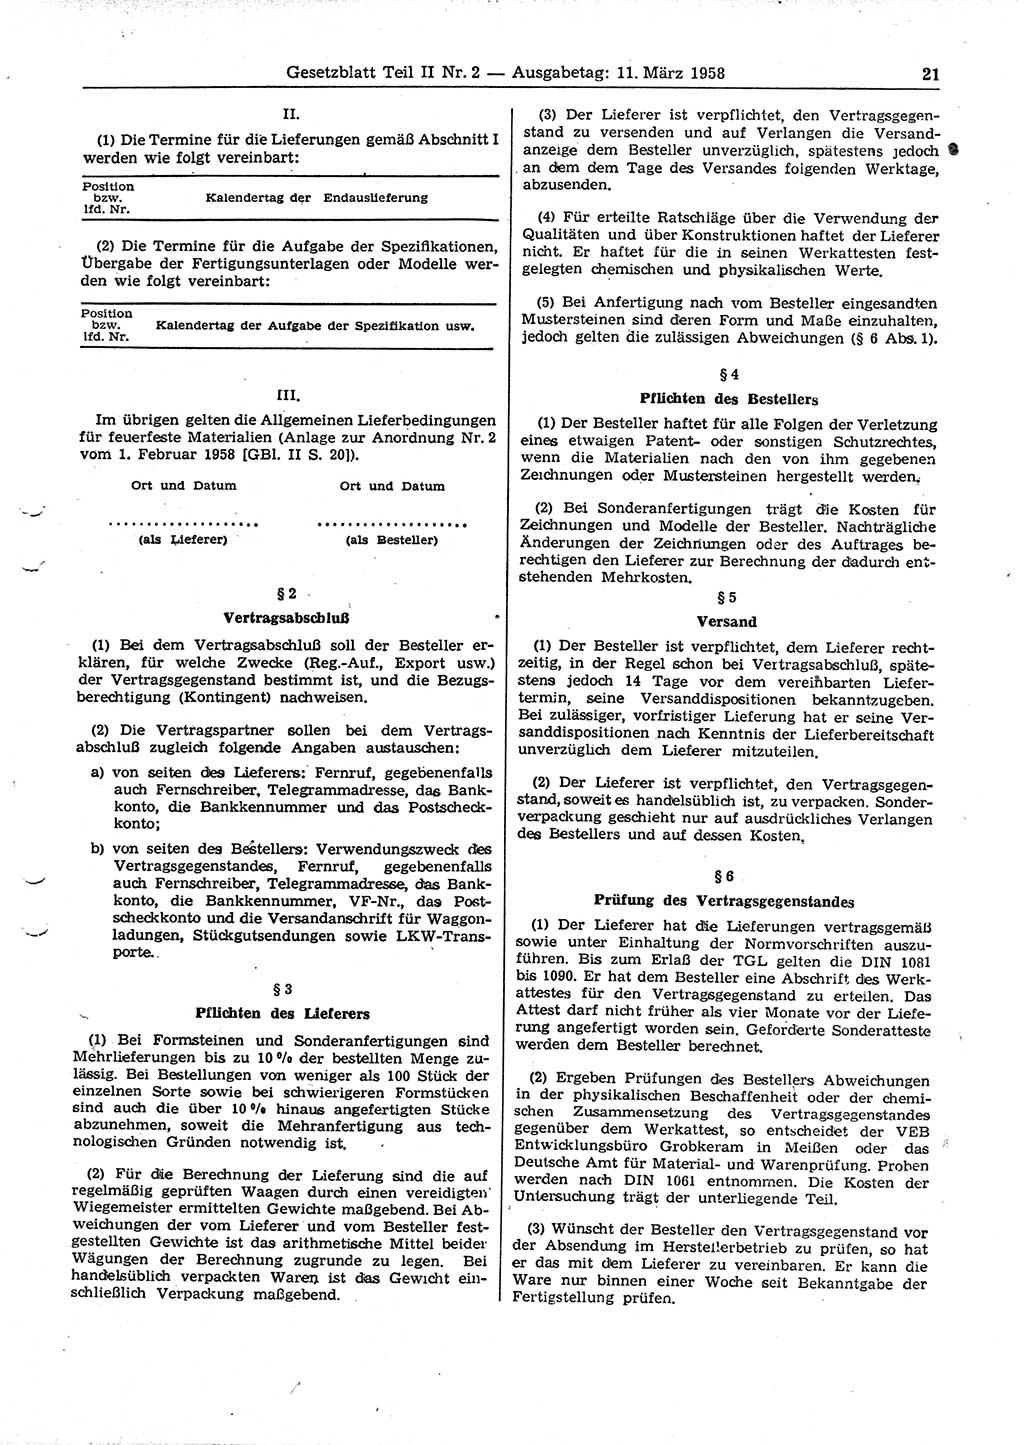 Gesetzblatt (GBl.) der Deutschen Demokratischen Republik (DDR) Teil ⅠⅠ 1958, Seite 21 (GBl. DDR ⅠⅠ 1958, S. 21)